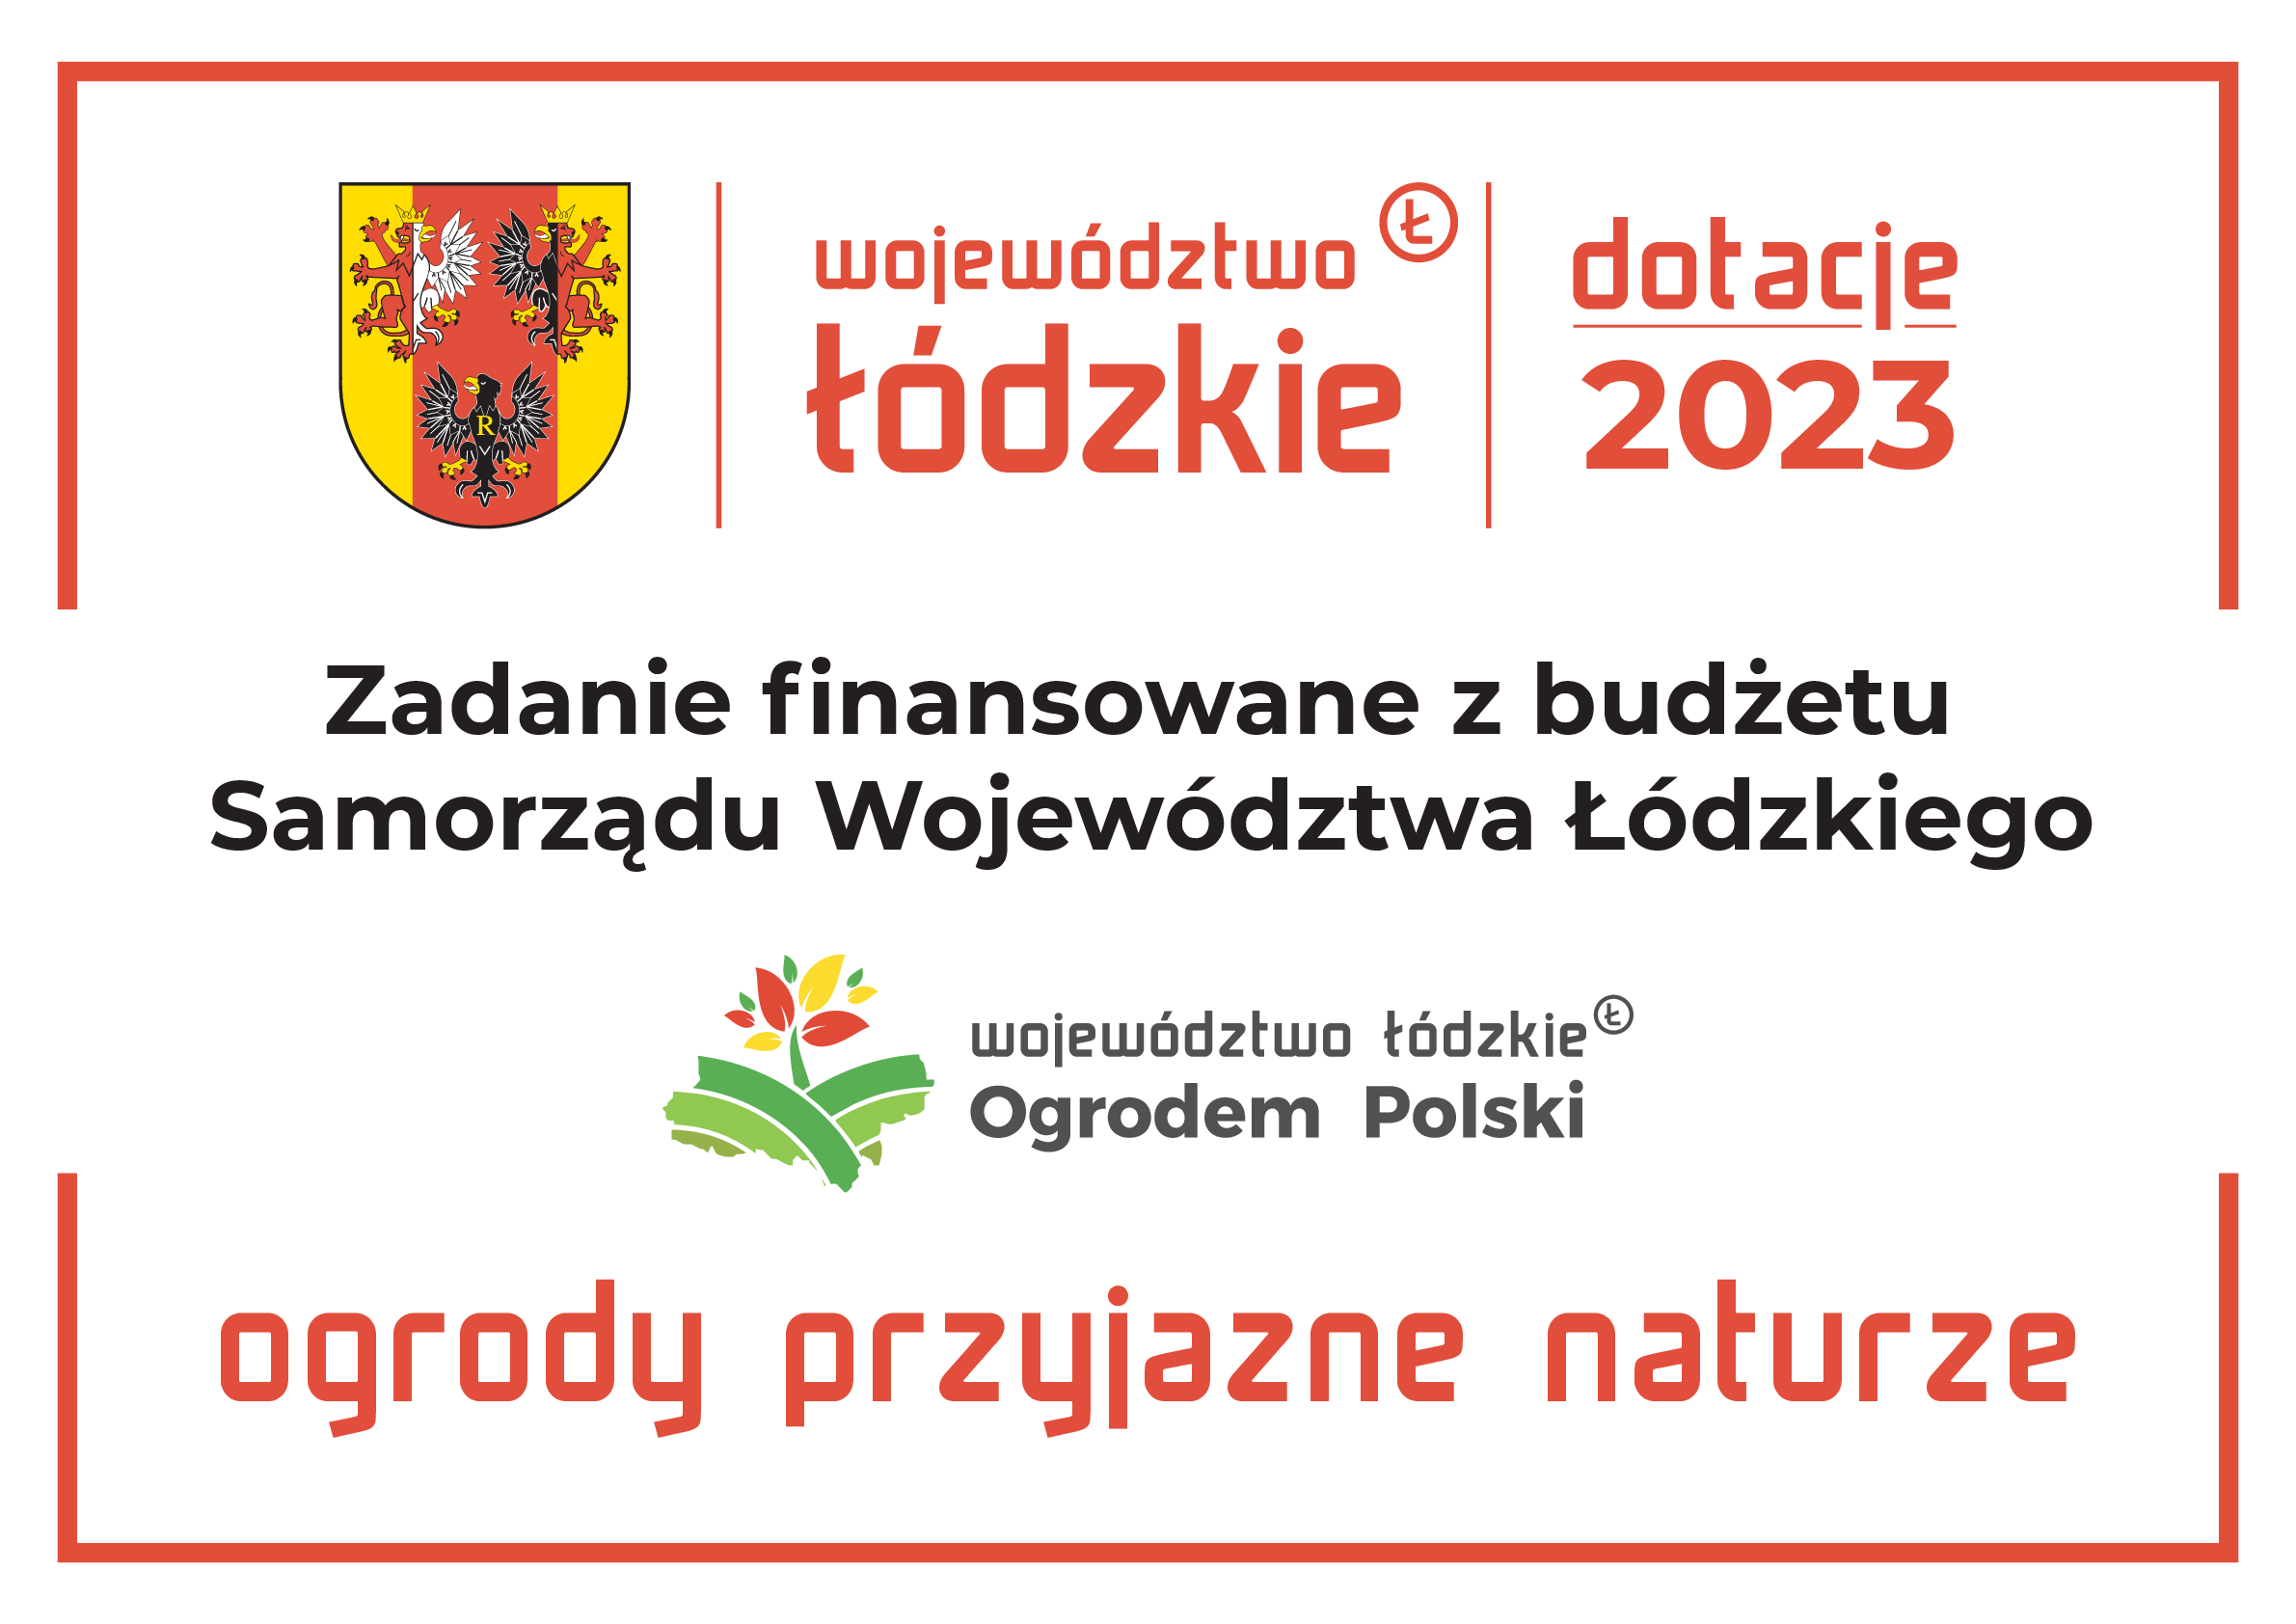 Projekt jest finansowany 2023 z budżetu Samorządu Województwa Łódzkiego